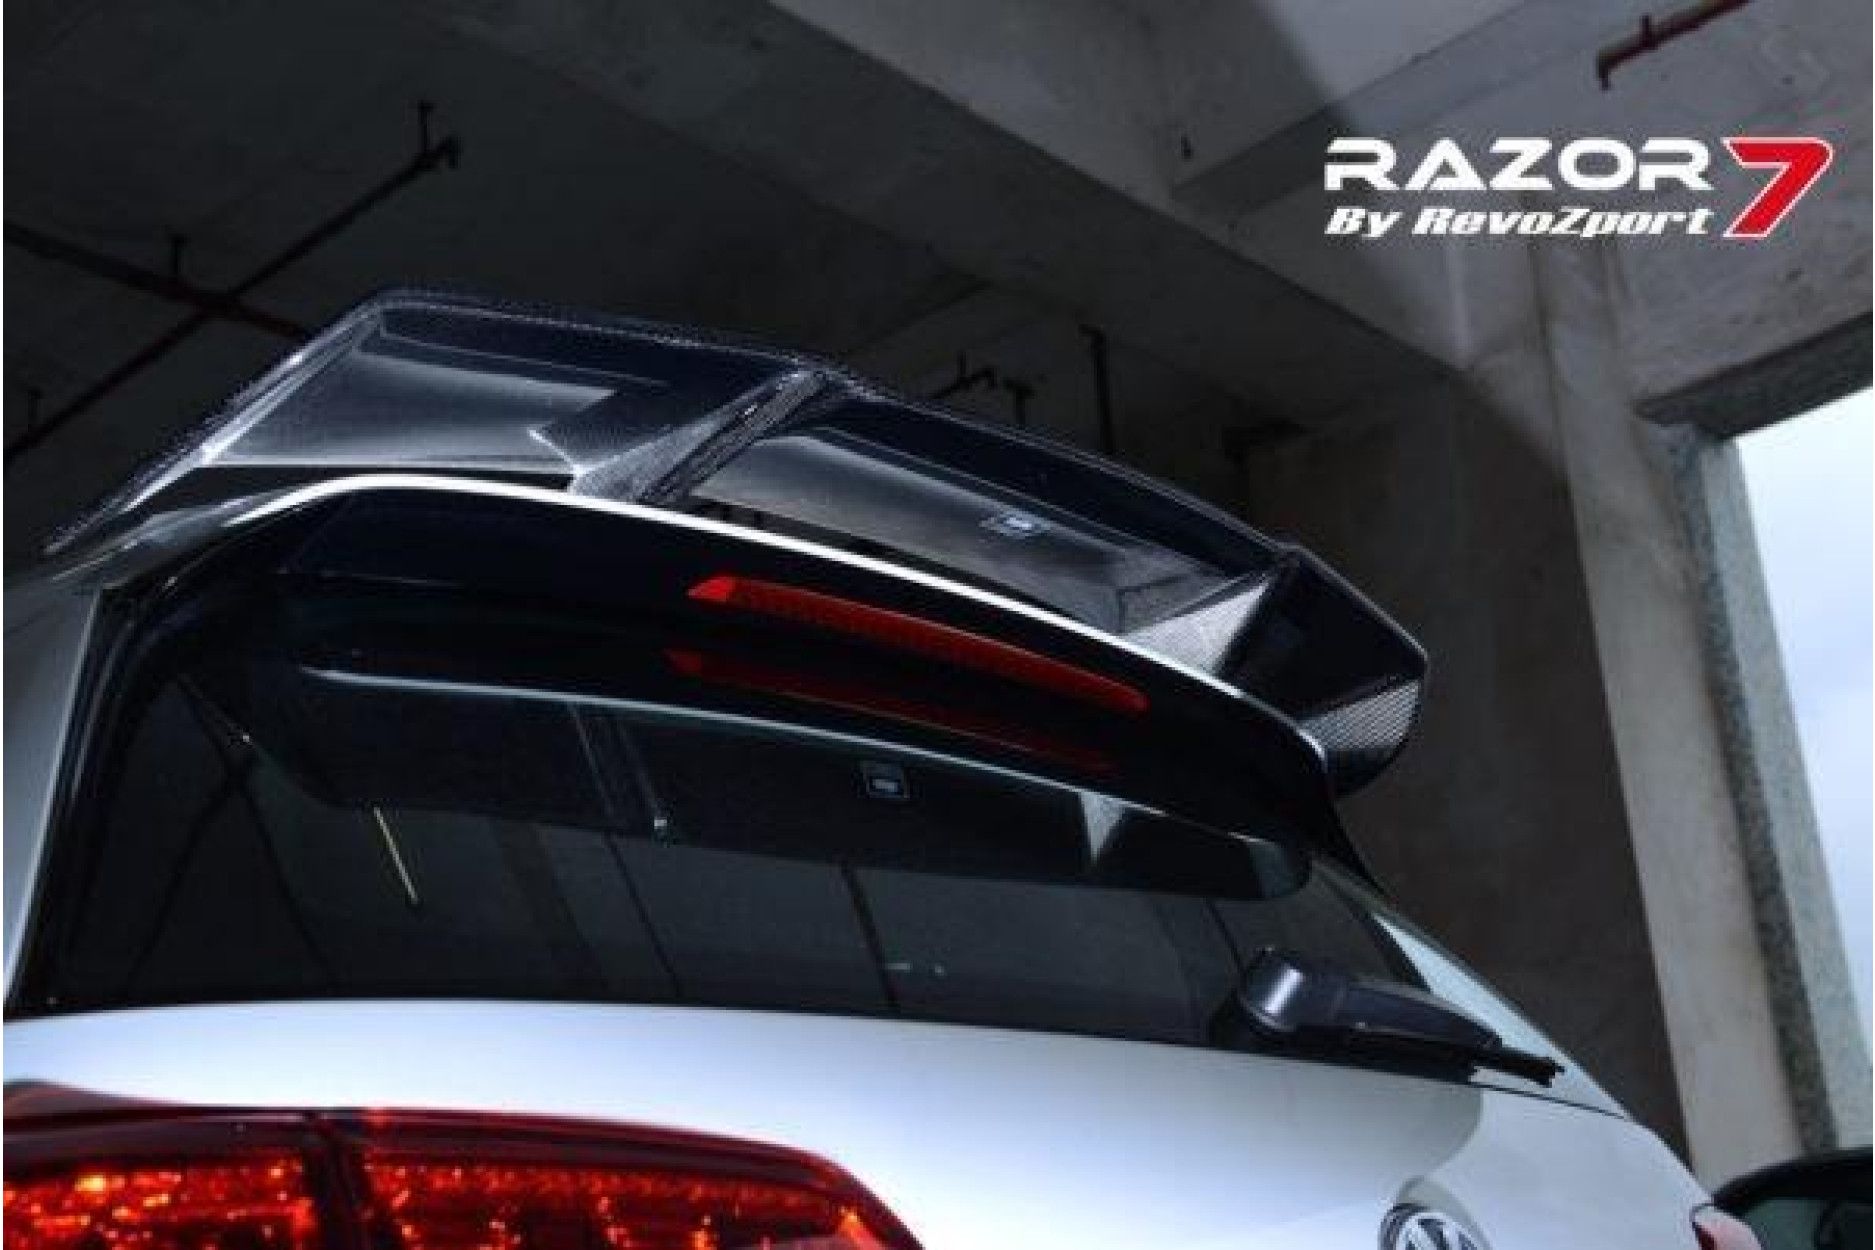 RevoZport Carbon Bodykit for Volkswagen Golf MK7|Golf 7 GTI pre-facelift "Razor 7" (3) 